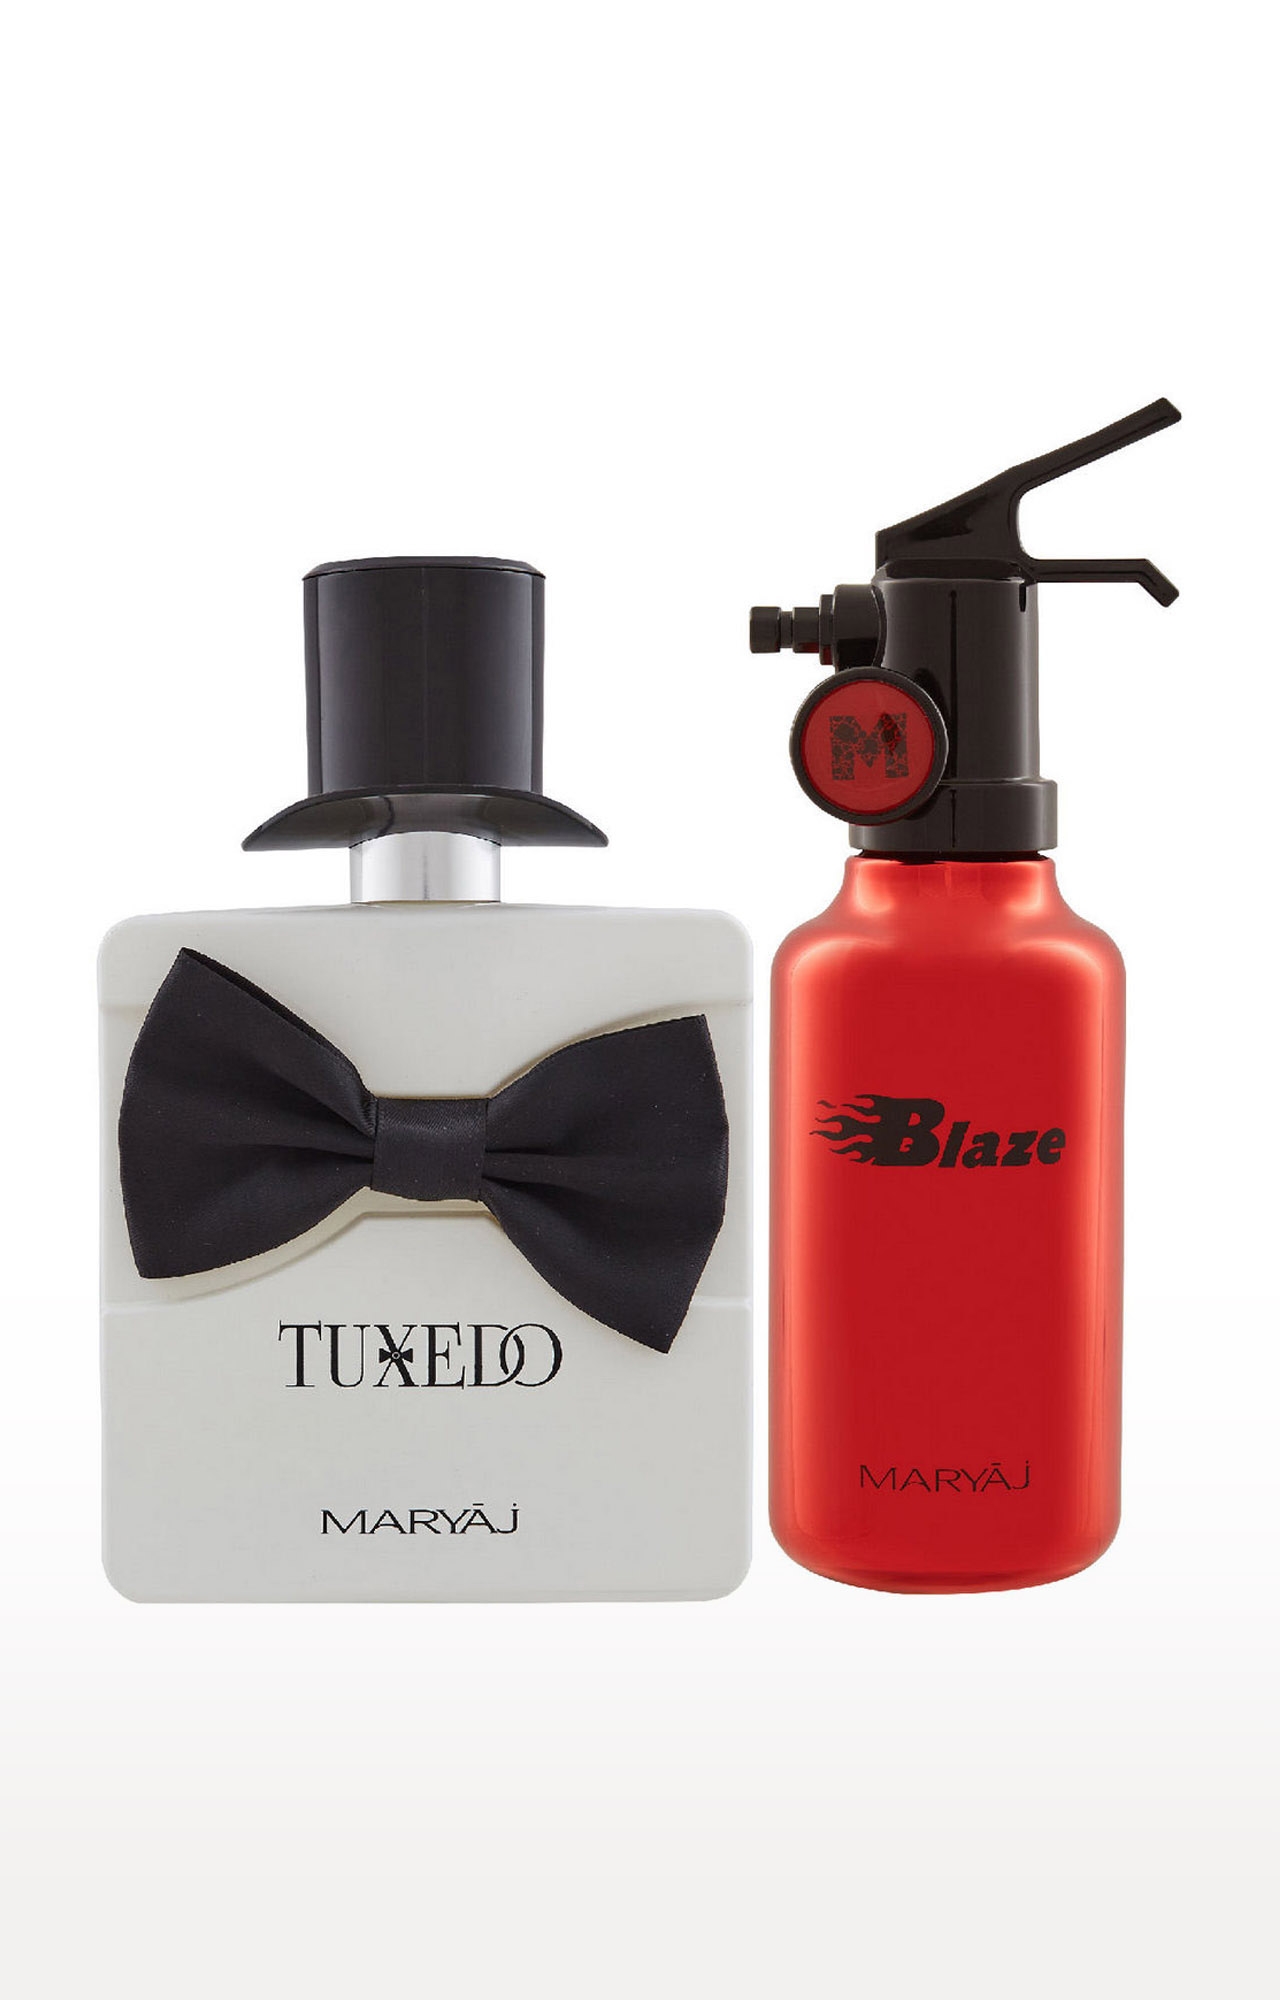 Maryaj | Maryaj Tuxedo Eau De Parfum Perfume 100ml for Men and Maryaj Blaze Eau De Parfum Perfume 100ml for Men 0